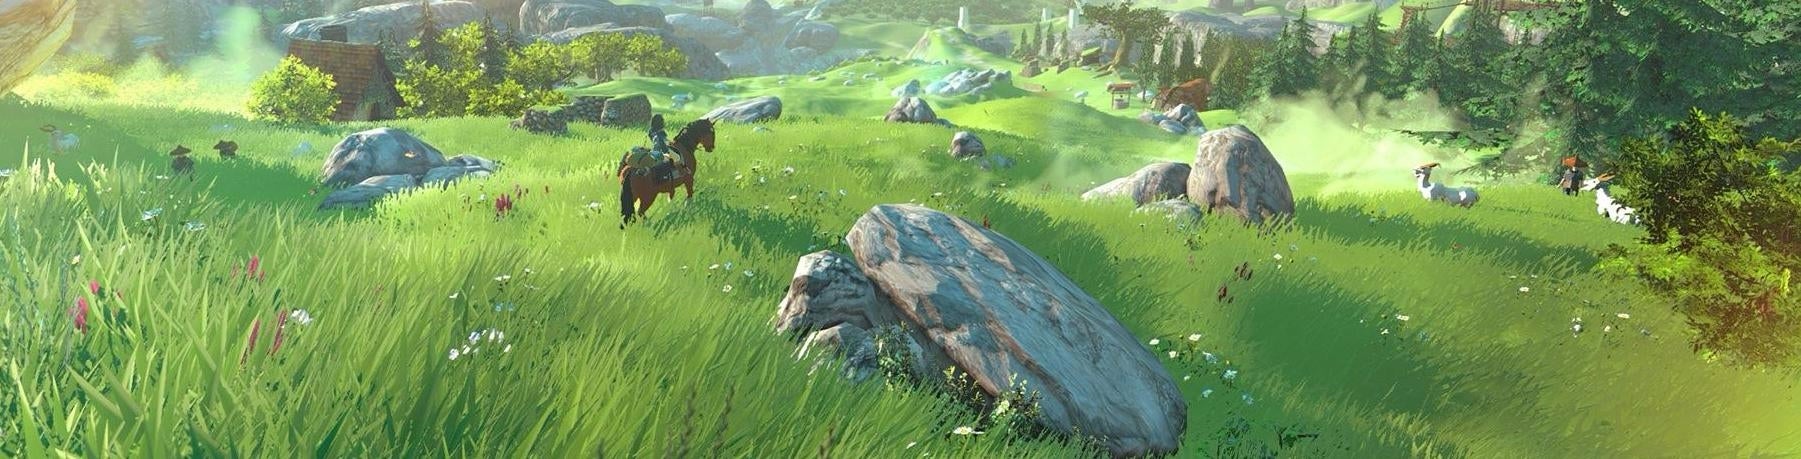 Obrazki dla Zelda: Breath of the Wild - różnice wersji Switch i Wii U